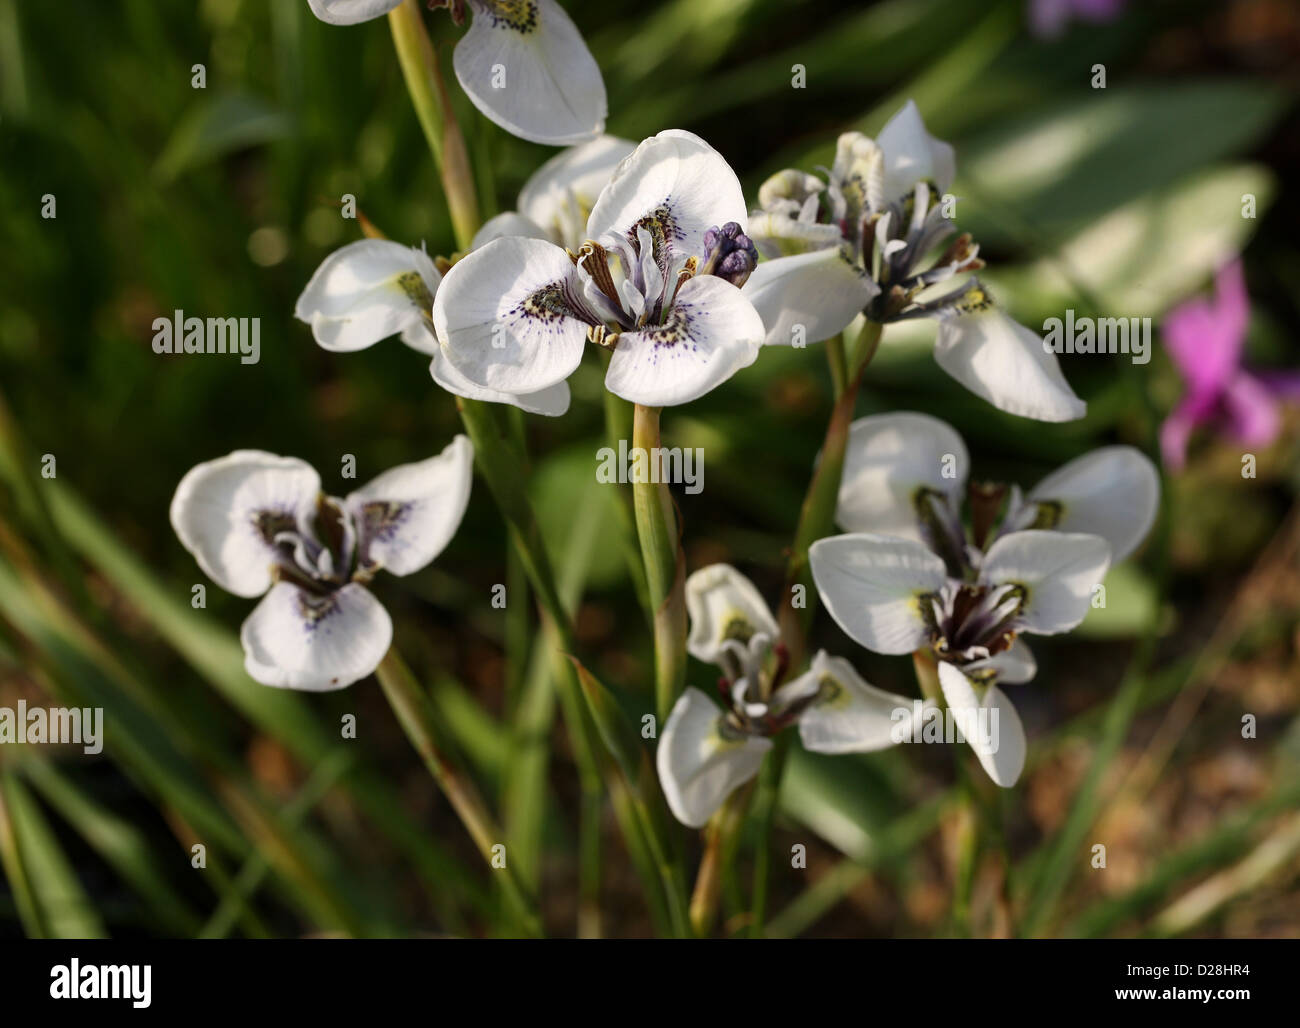 Moraea tricuspidata, Iridaceae, Cape Province, South Africa. Stock Photo